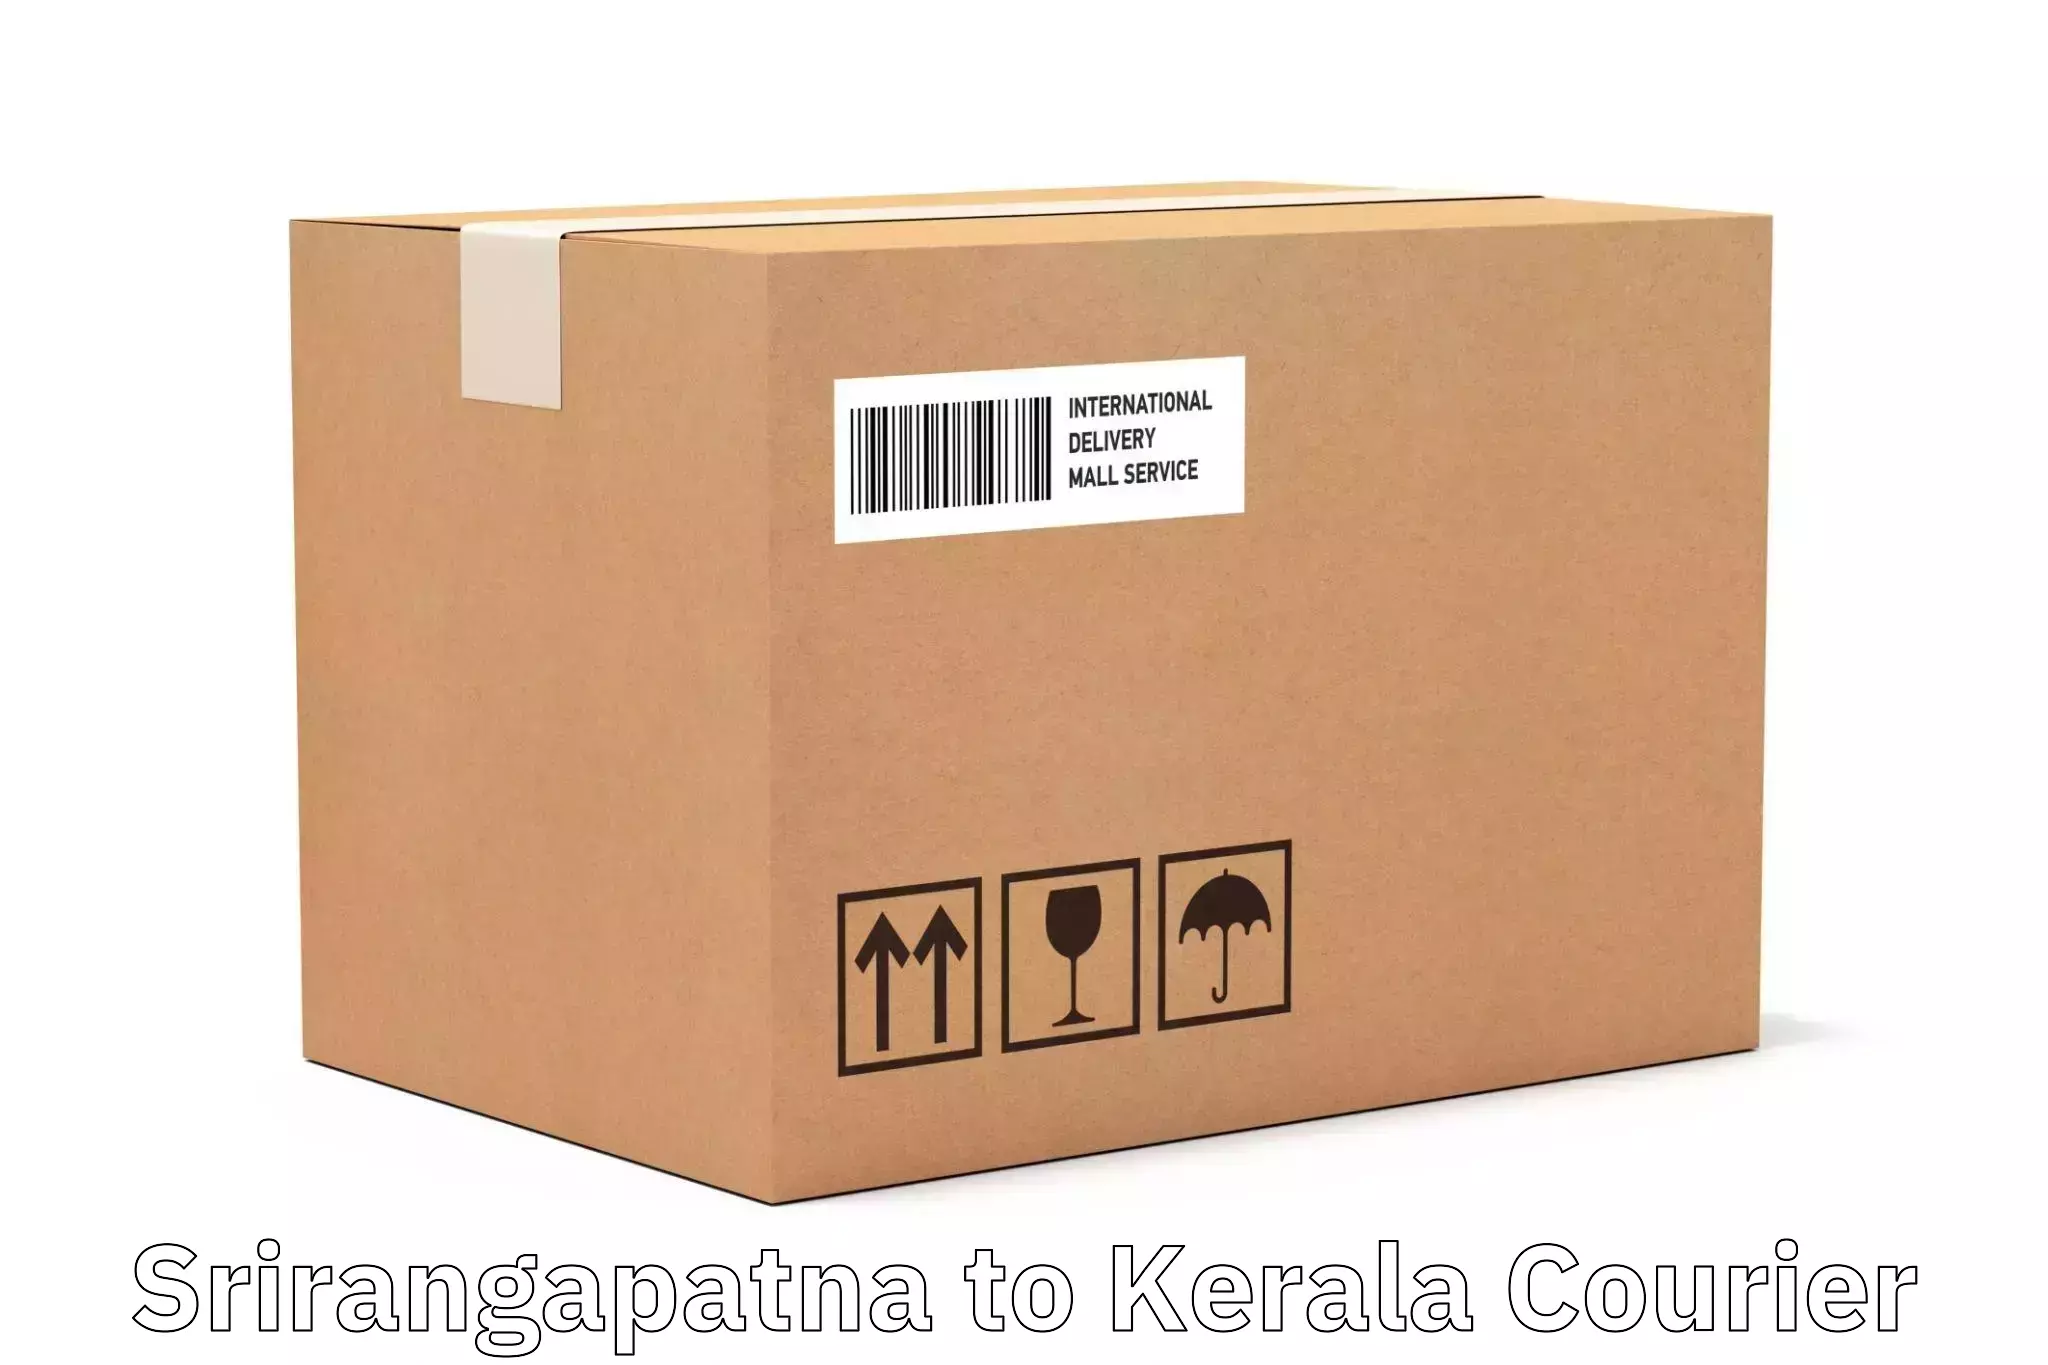 Express postal services Srirangapatna to Cochin Port Kochi